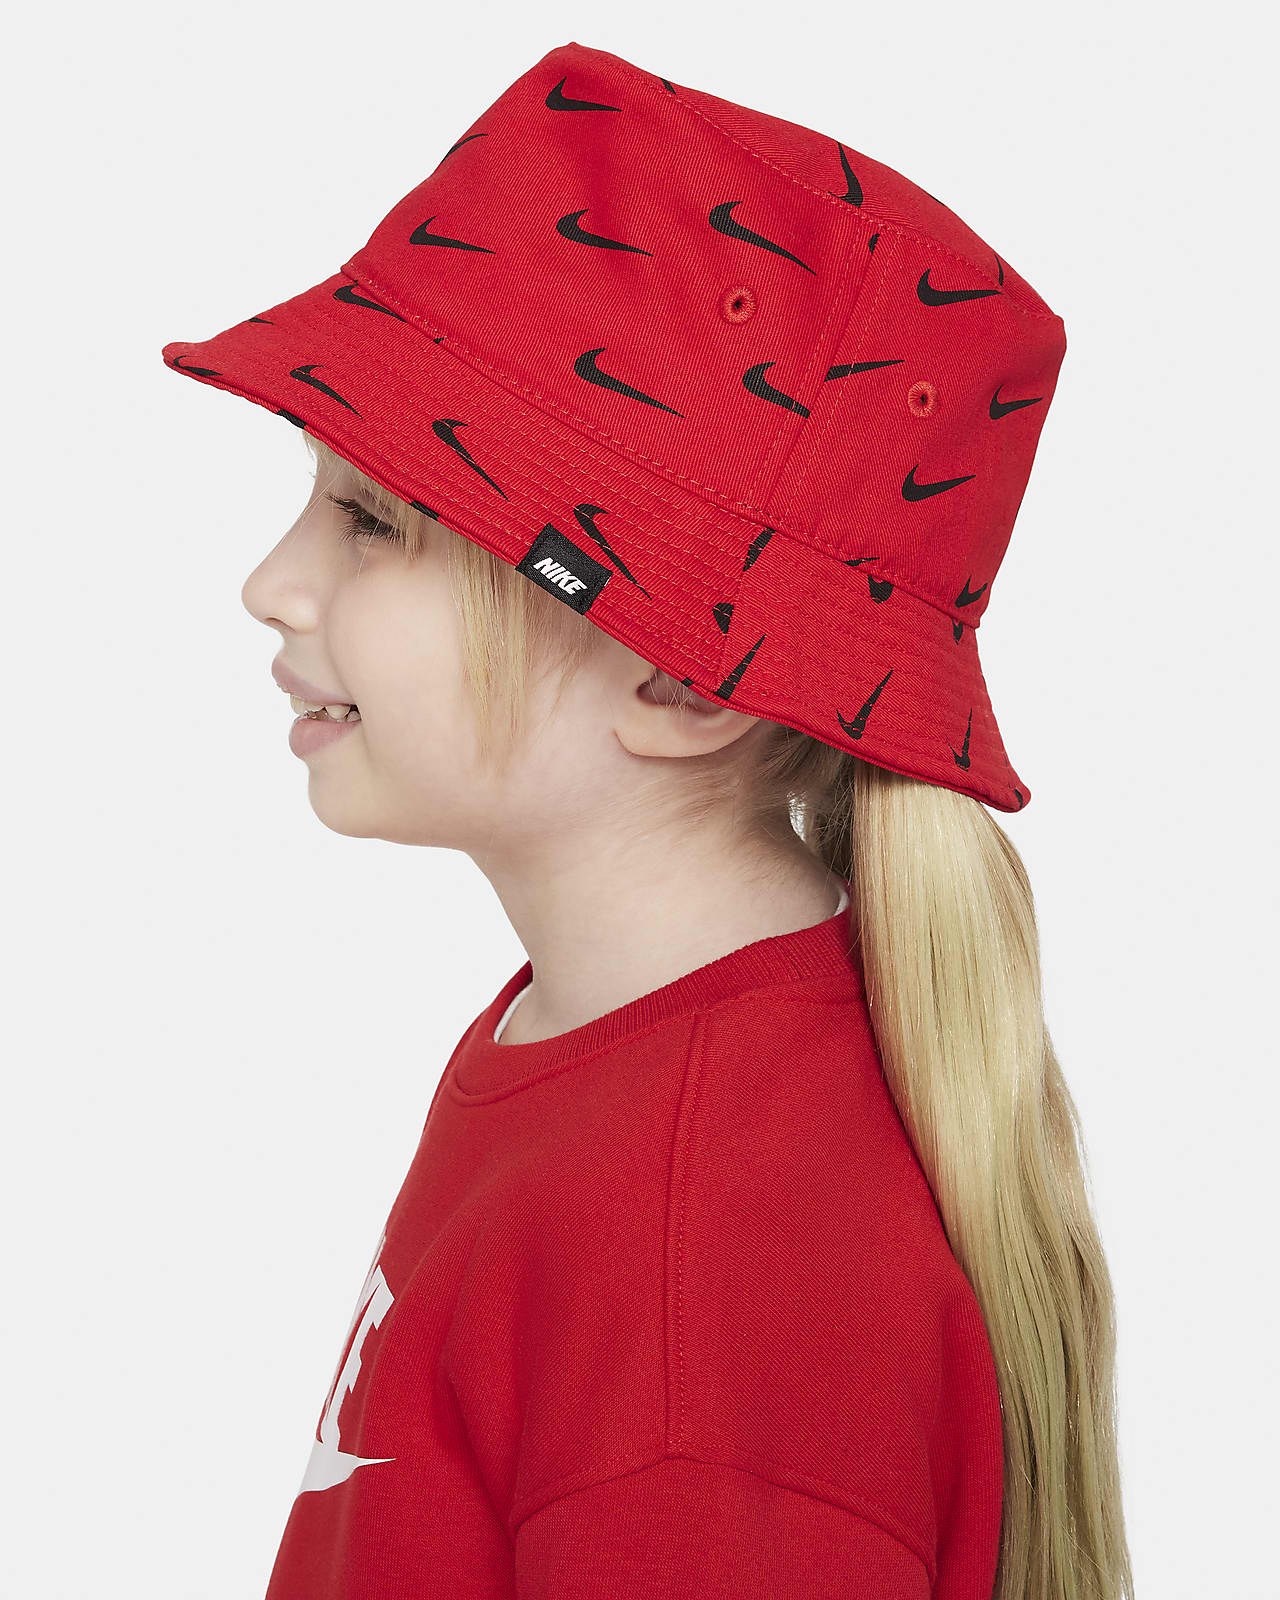 Nike Little Kids' Bucket Hat.